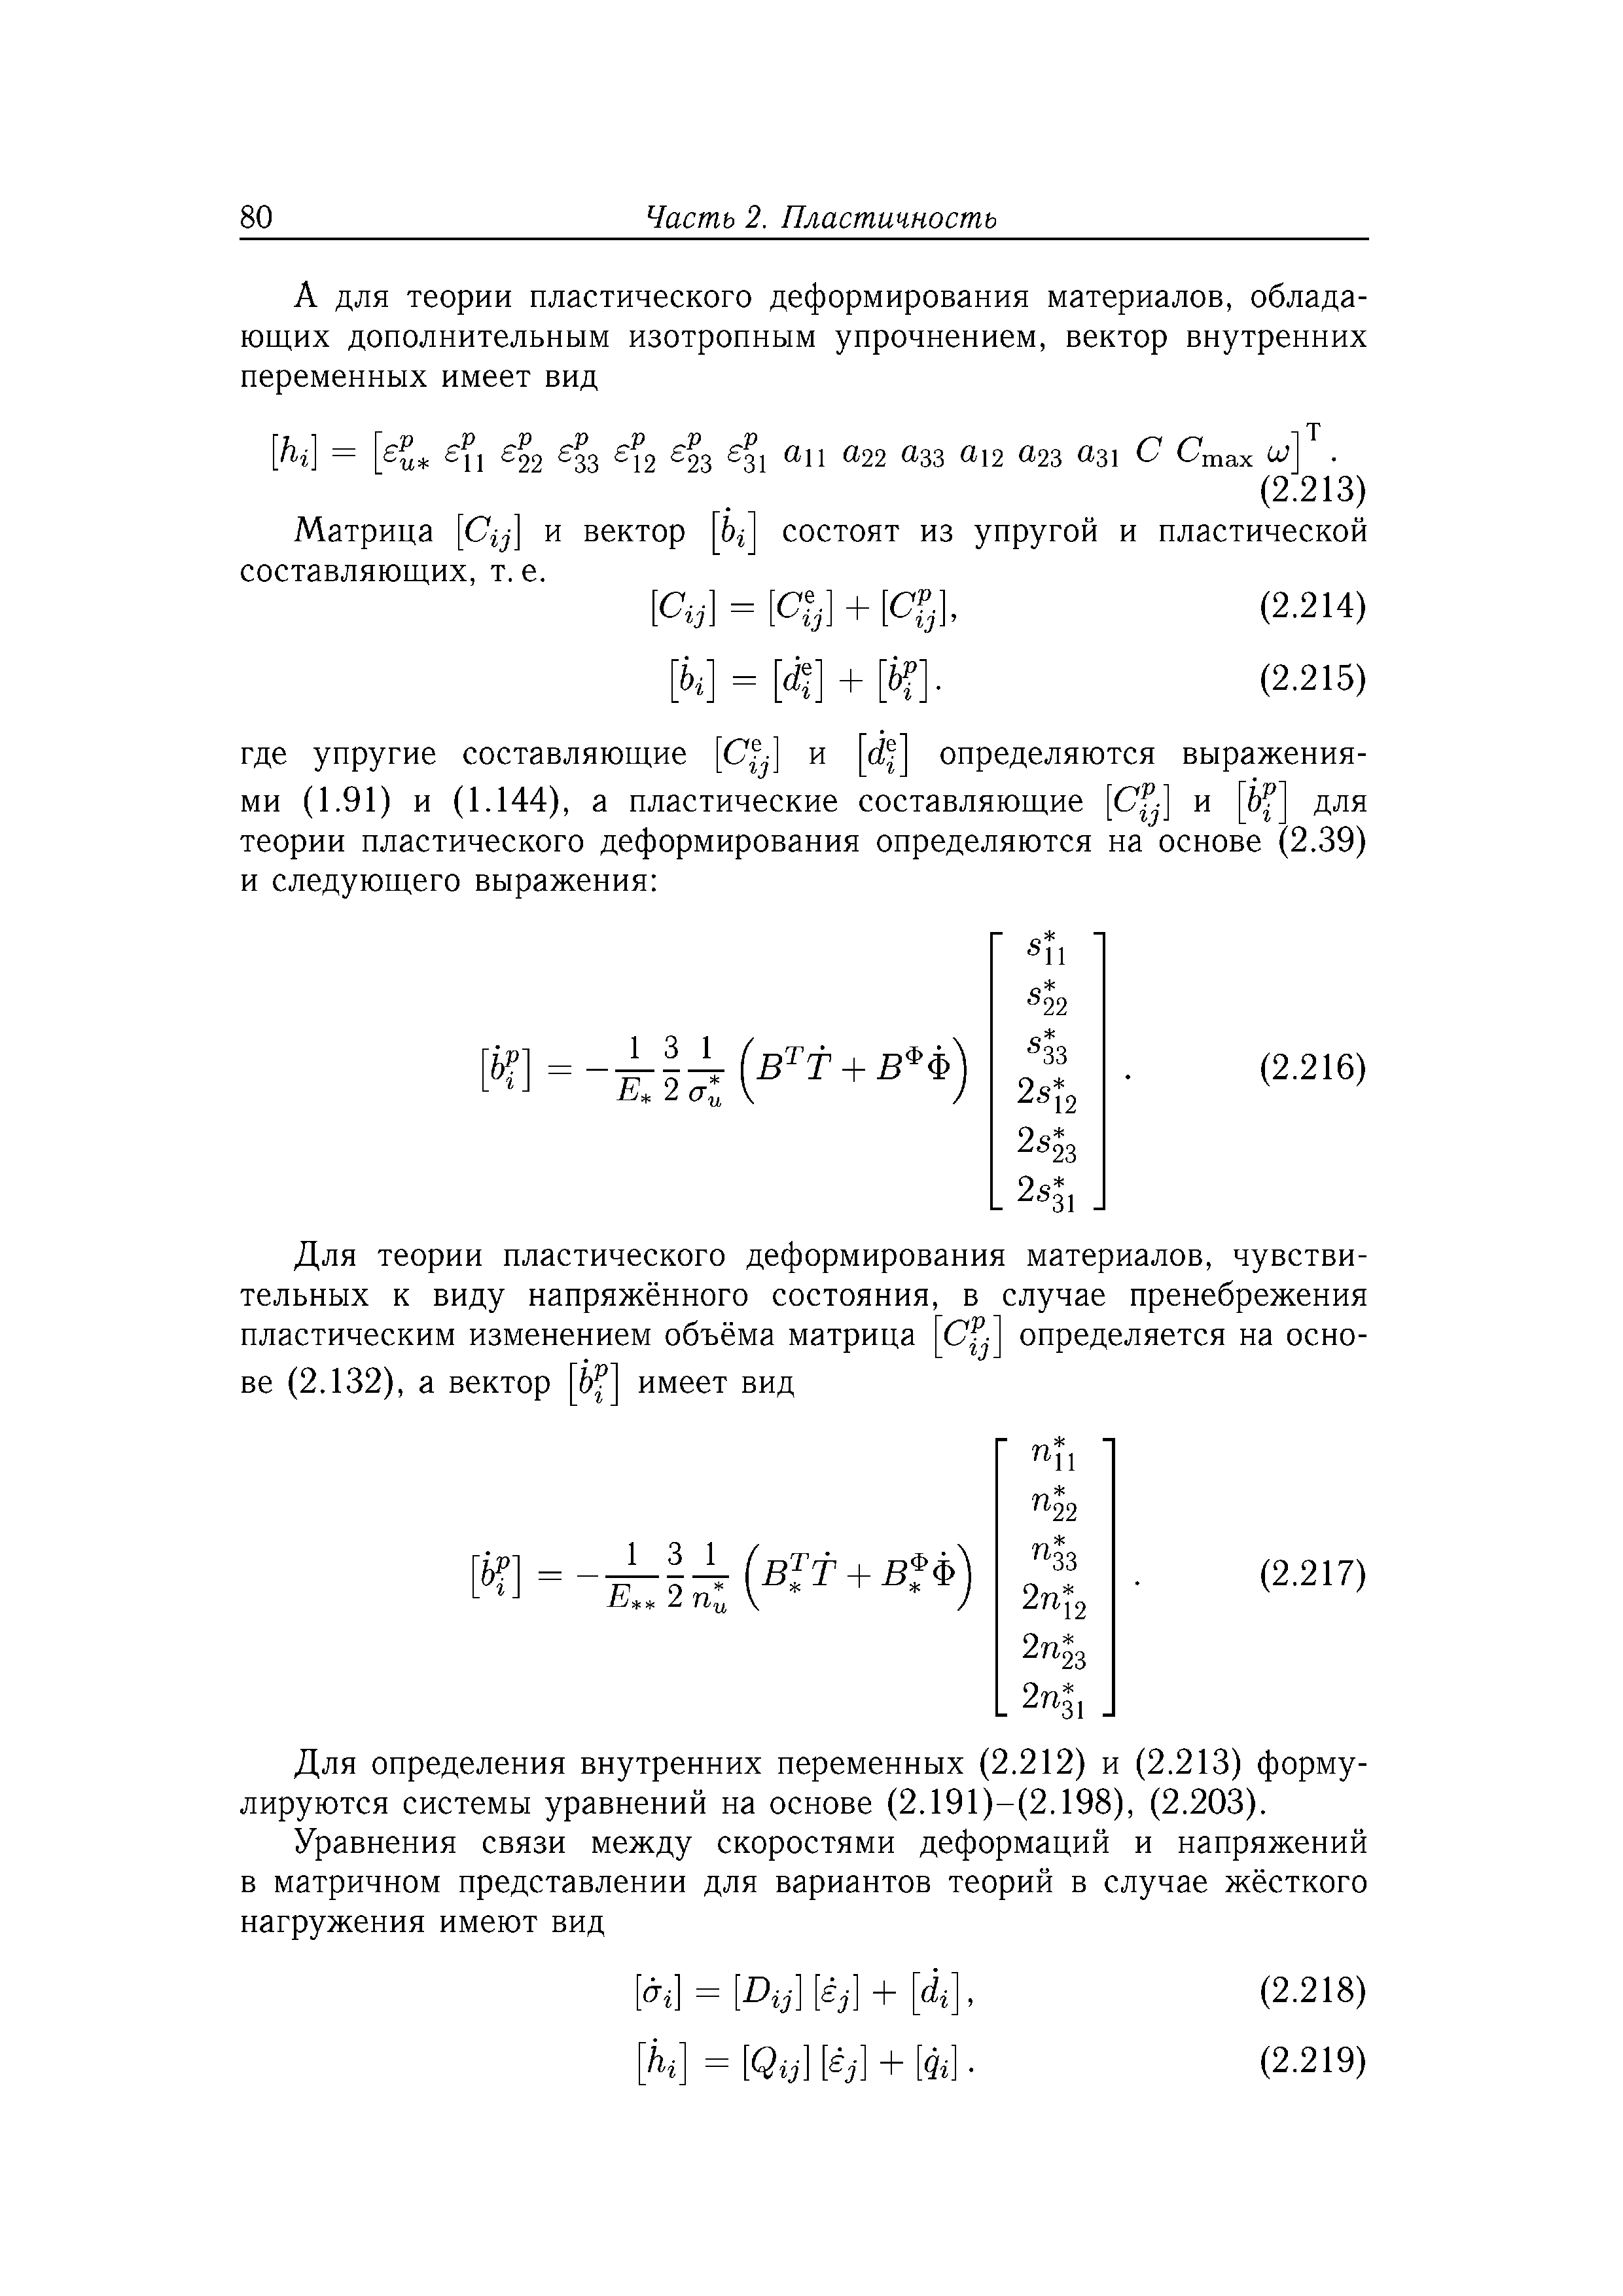 Для определения внутренних переменных (2.212) и (2.213) формулируются системы уравнений на основе (2.191)-(2.198), (2.203).
